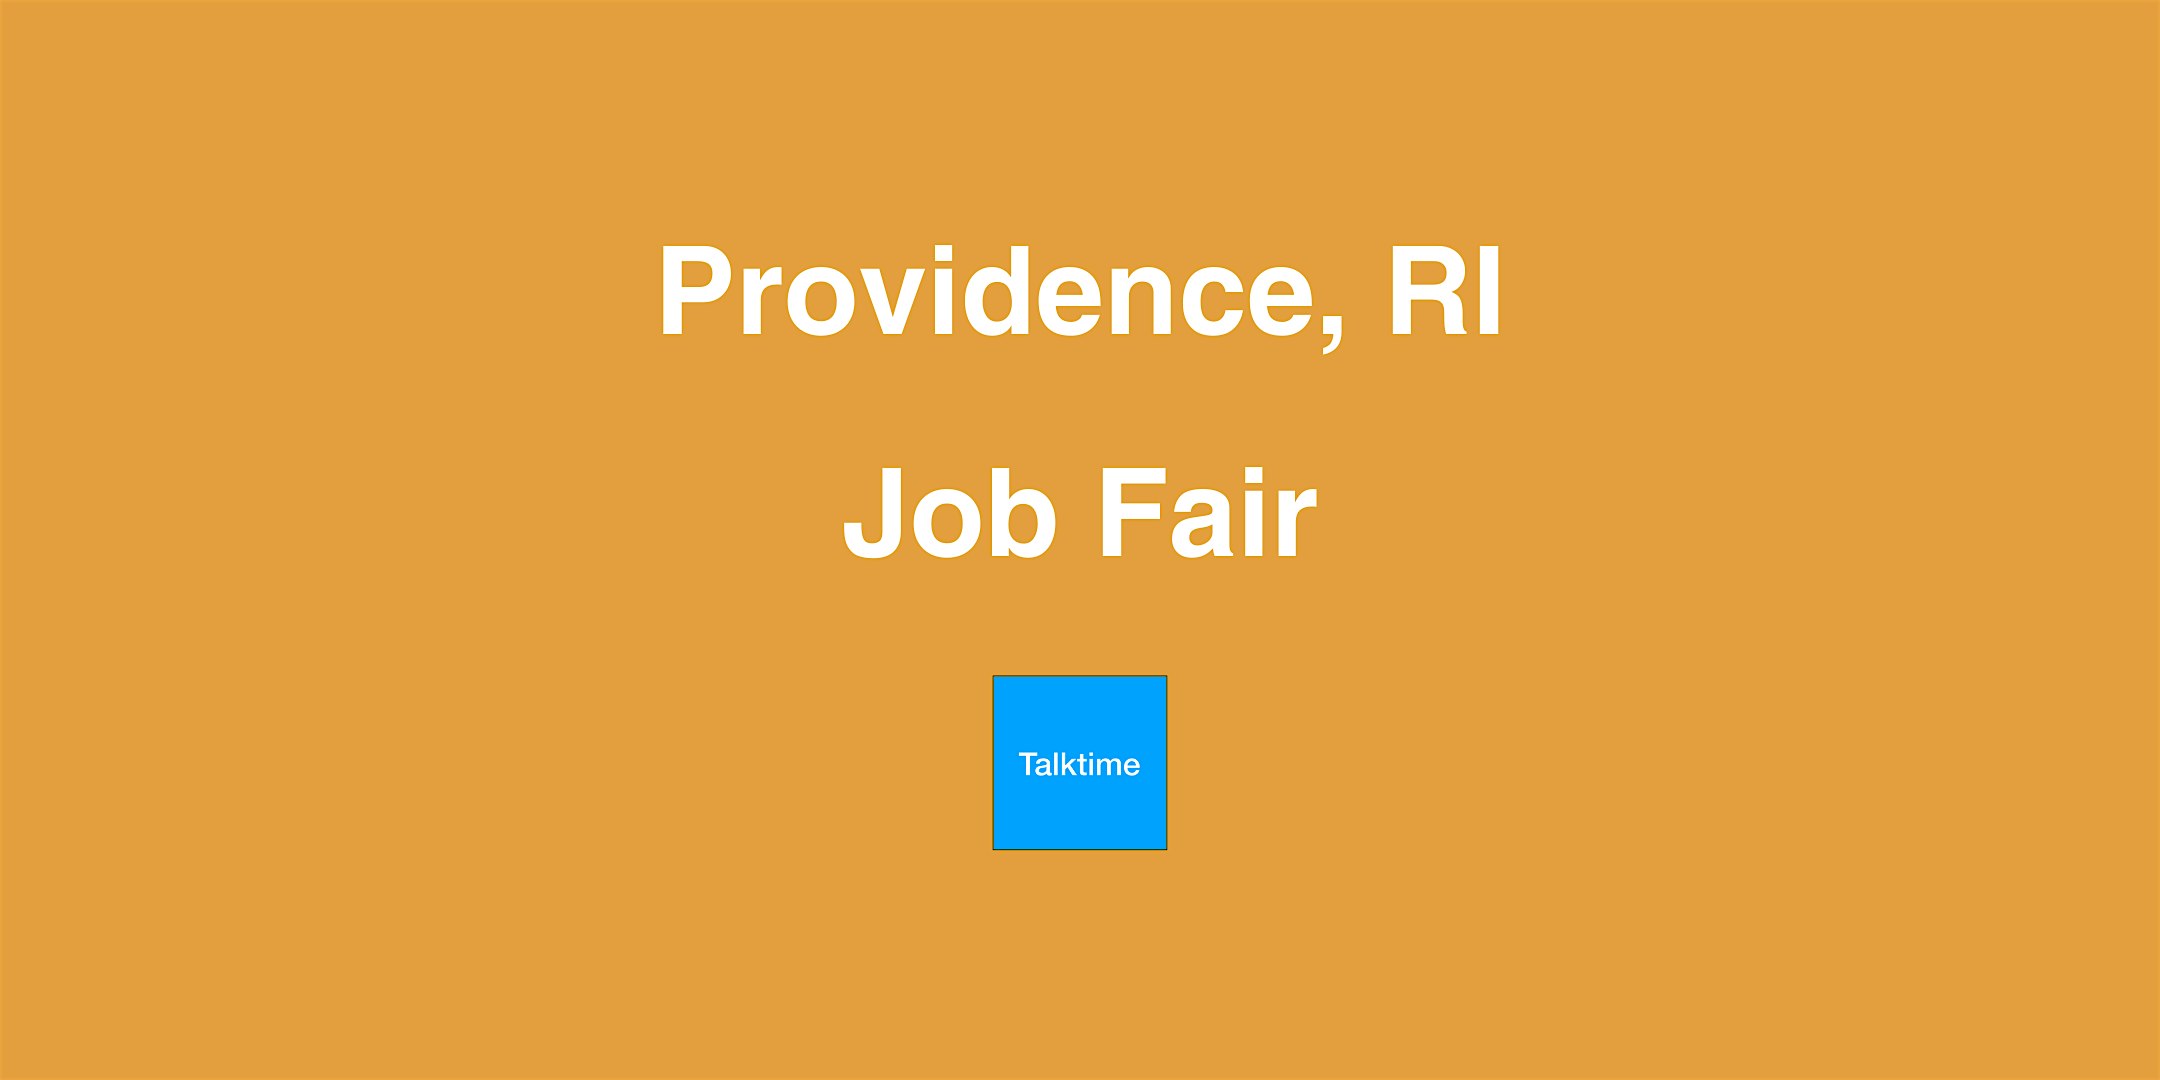 Job Fair - Providence